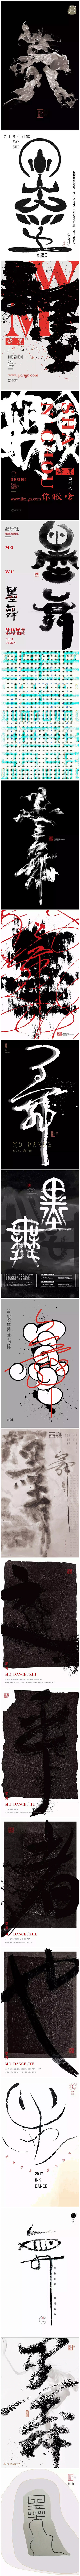 中国风|H5|海报|创意|白墨广告|字体...